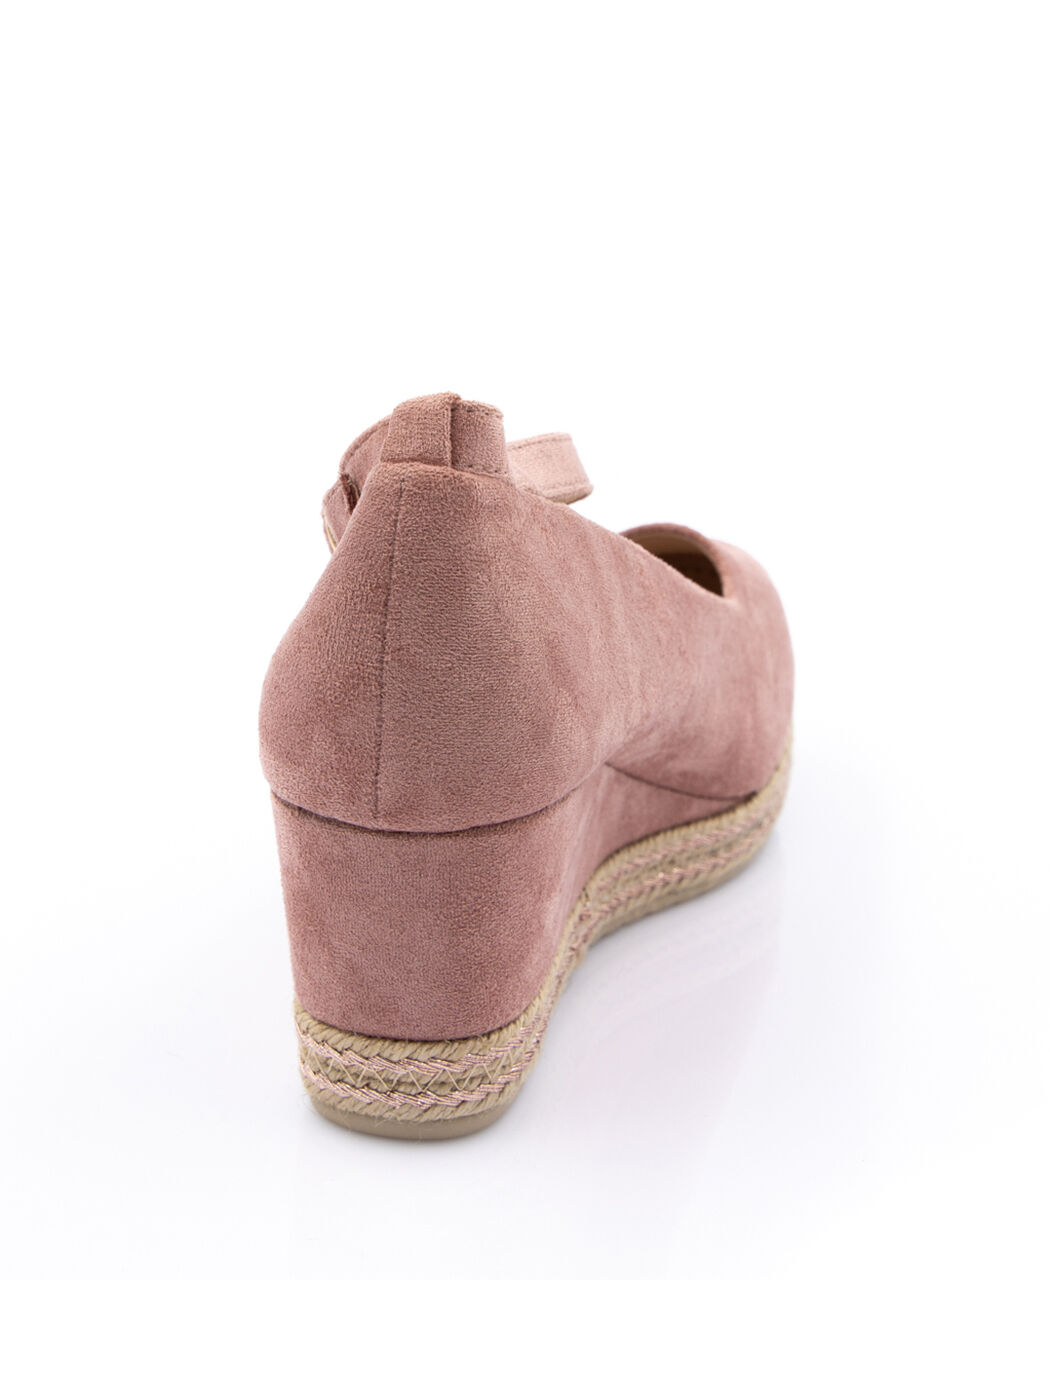 Туфли женские розовые экозамша каблук устойчивый демисезон от производителя 2M вид 1